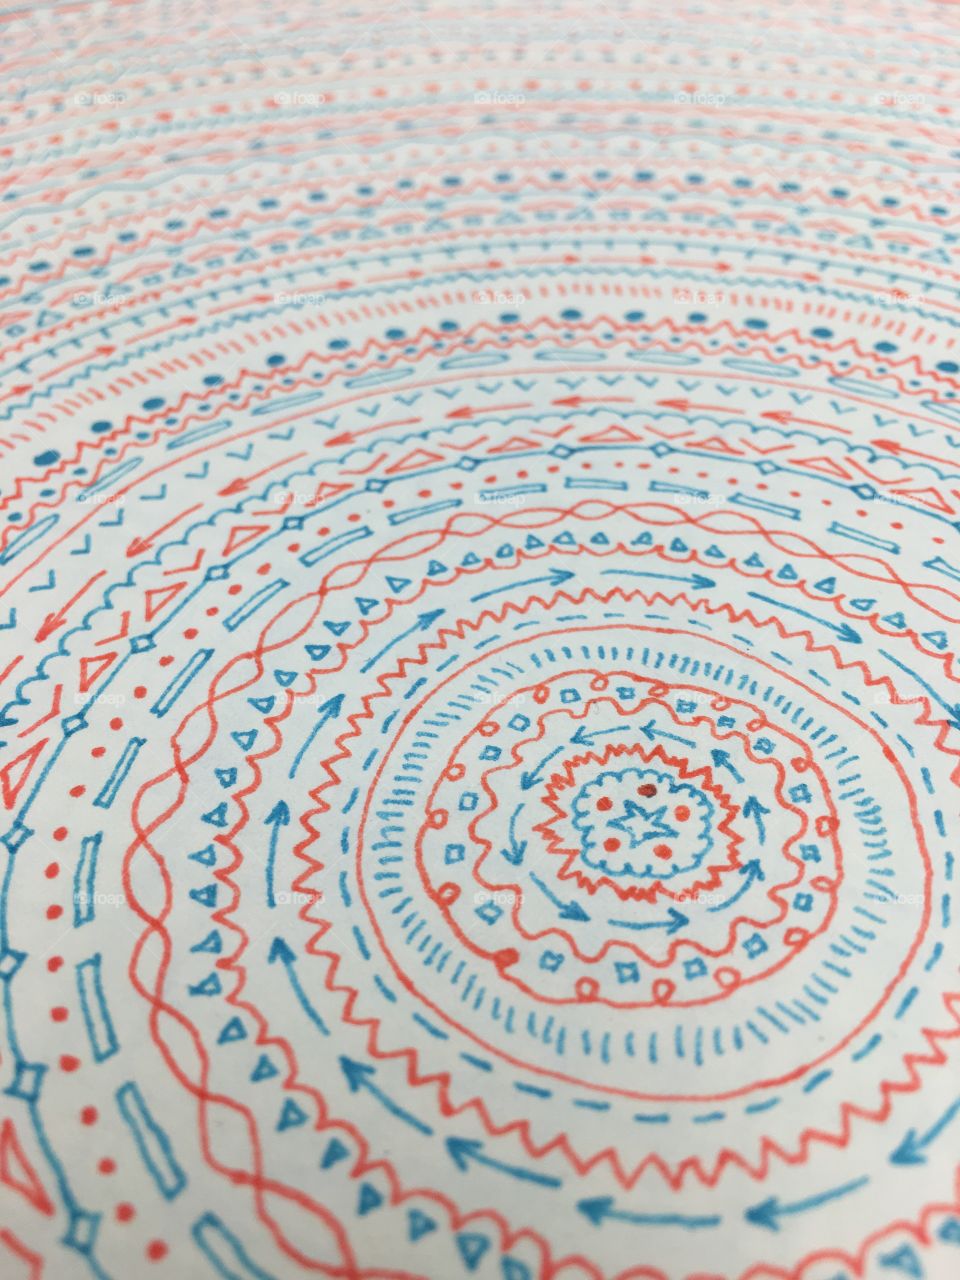 Geometric Art Doodle Circular Pattern Drawing (Orange & Blue) 